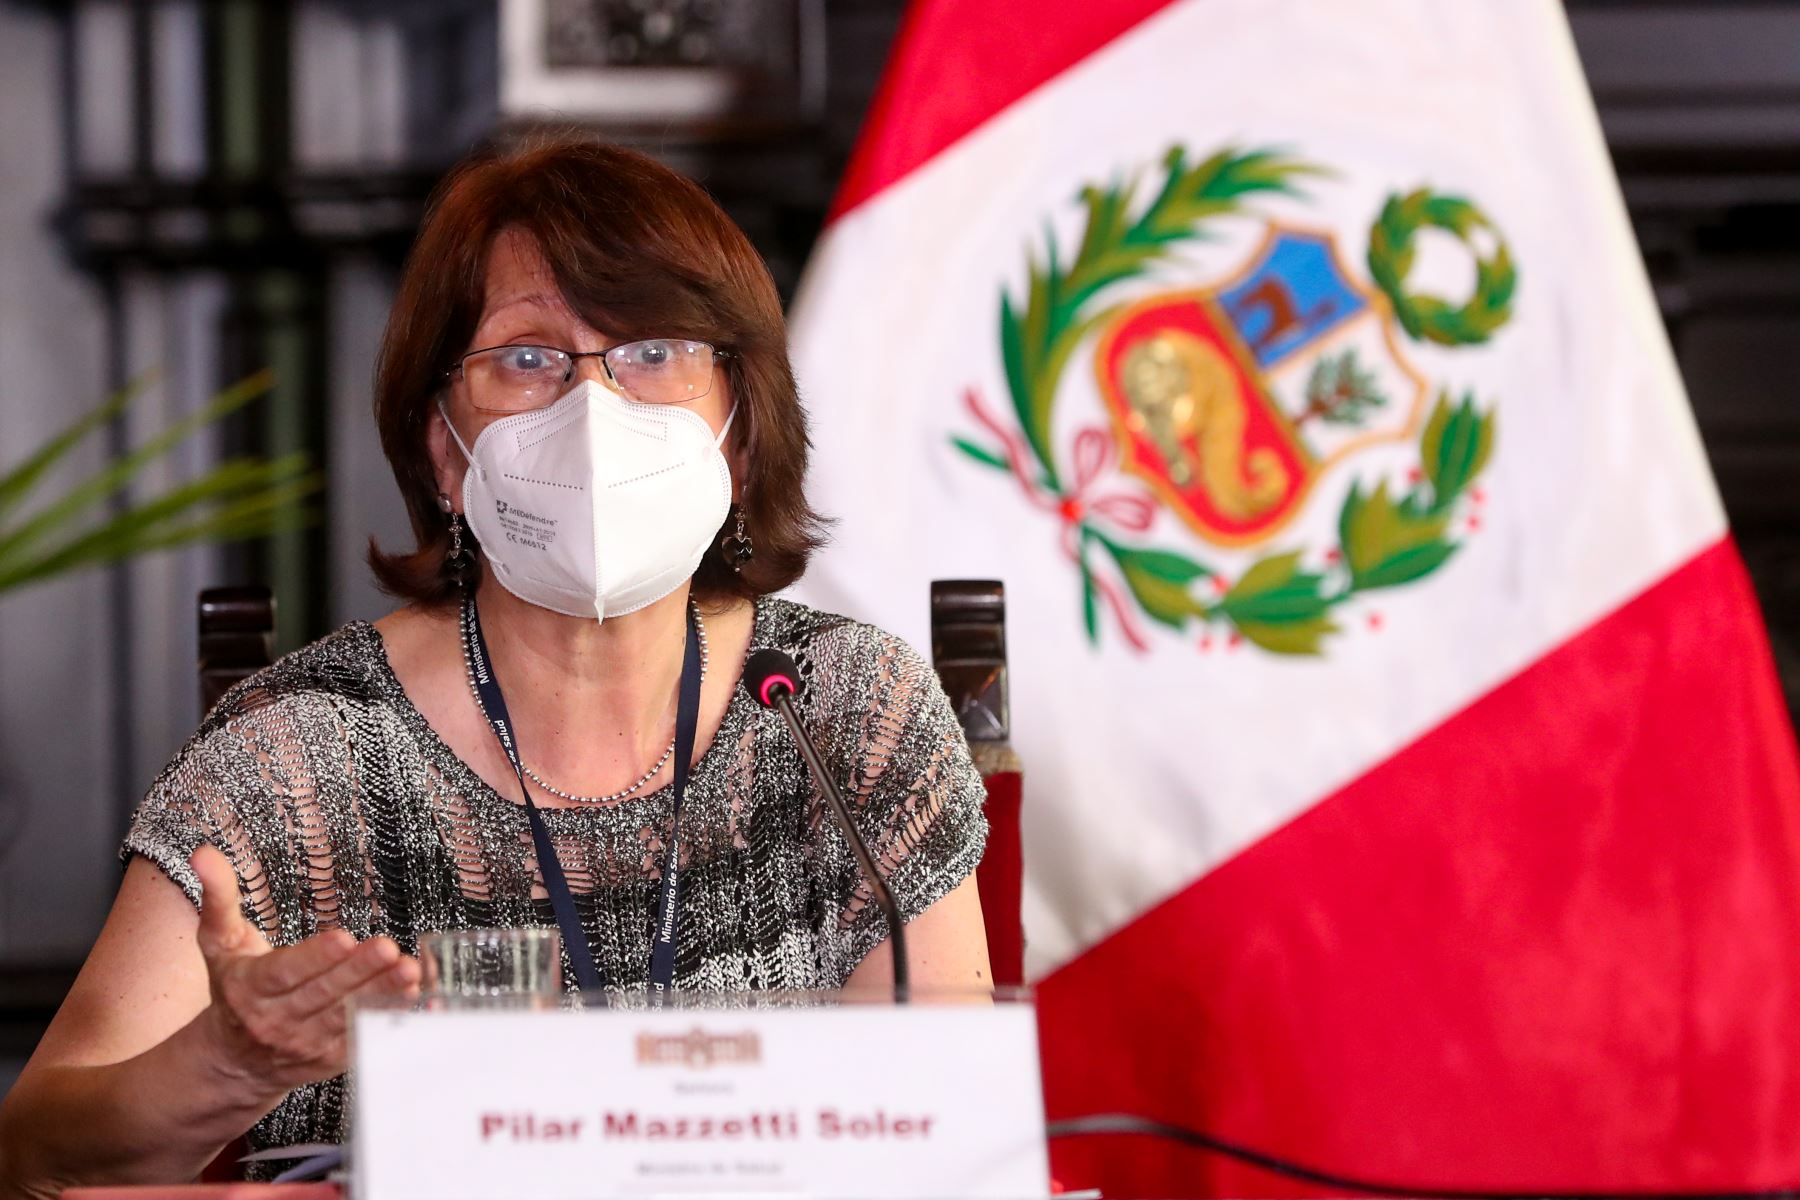 La ministra de Vivienda, Solangel Fernández, expone los acuerdos adoptados en la sesión de Consejo de Ministros, orientados a la mejora de los servicios públicos y atención de la emergencia sanitaria.
Foto: PCM